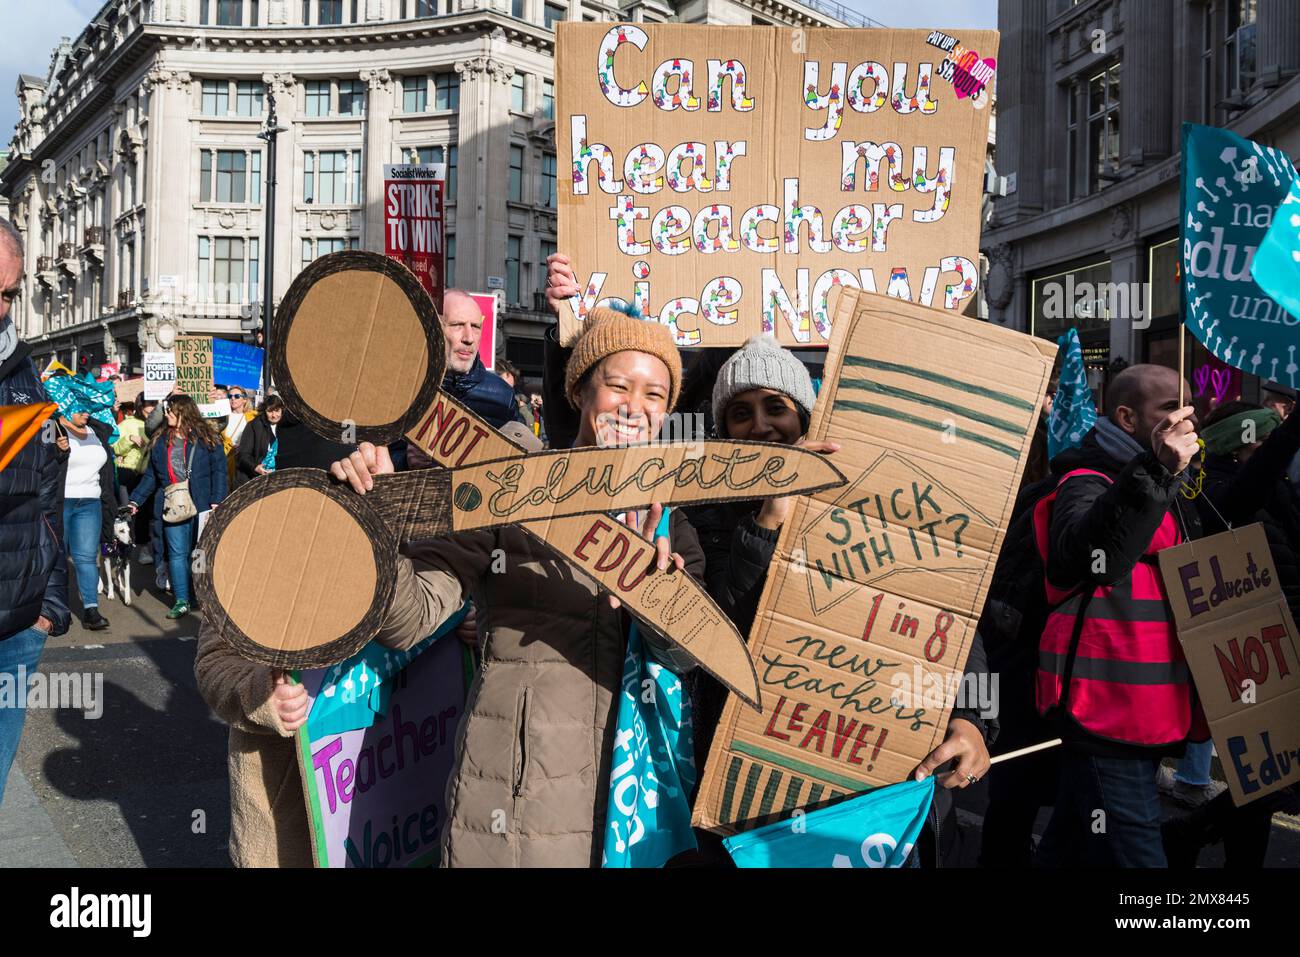 Protesta contra los recortes en la educación, maestros y funcionarios se unen a la huelga masiva en el 'miércoles de huelga', Londres, Reino Unido. 01/02/2023 Foto de stock